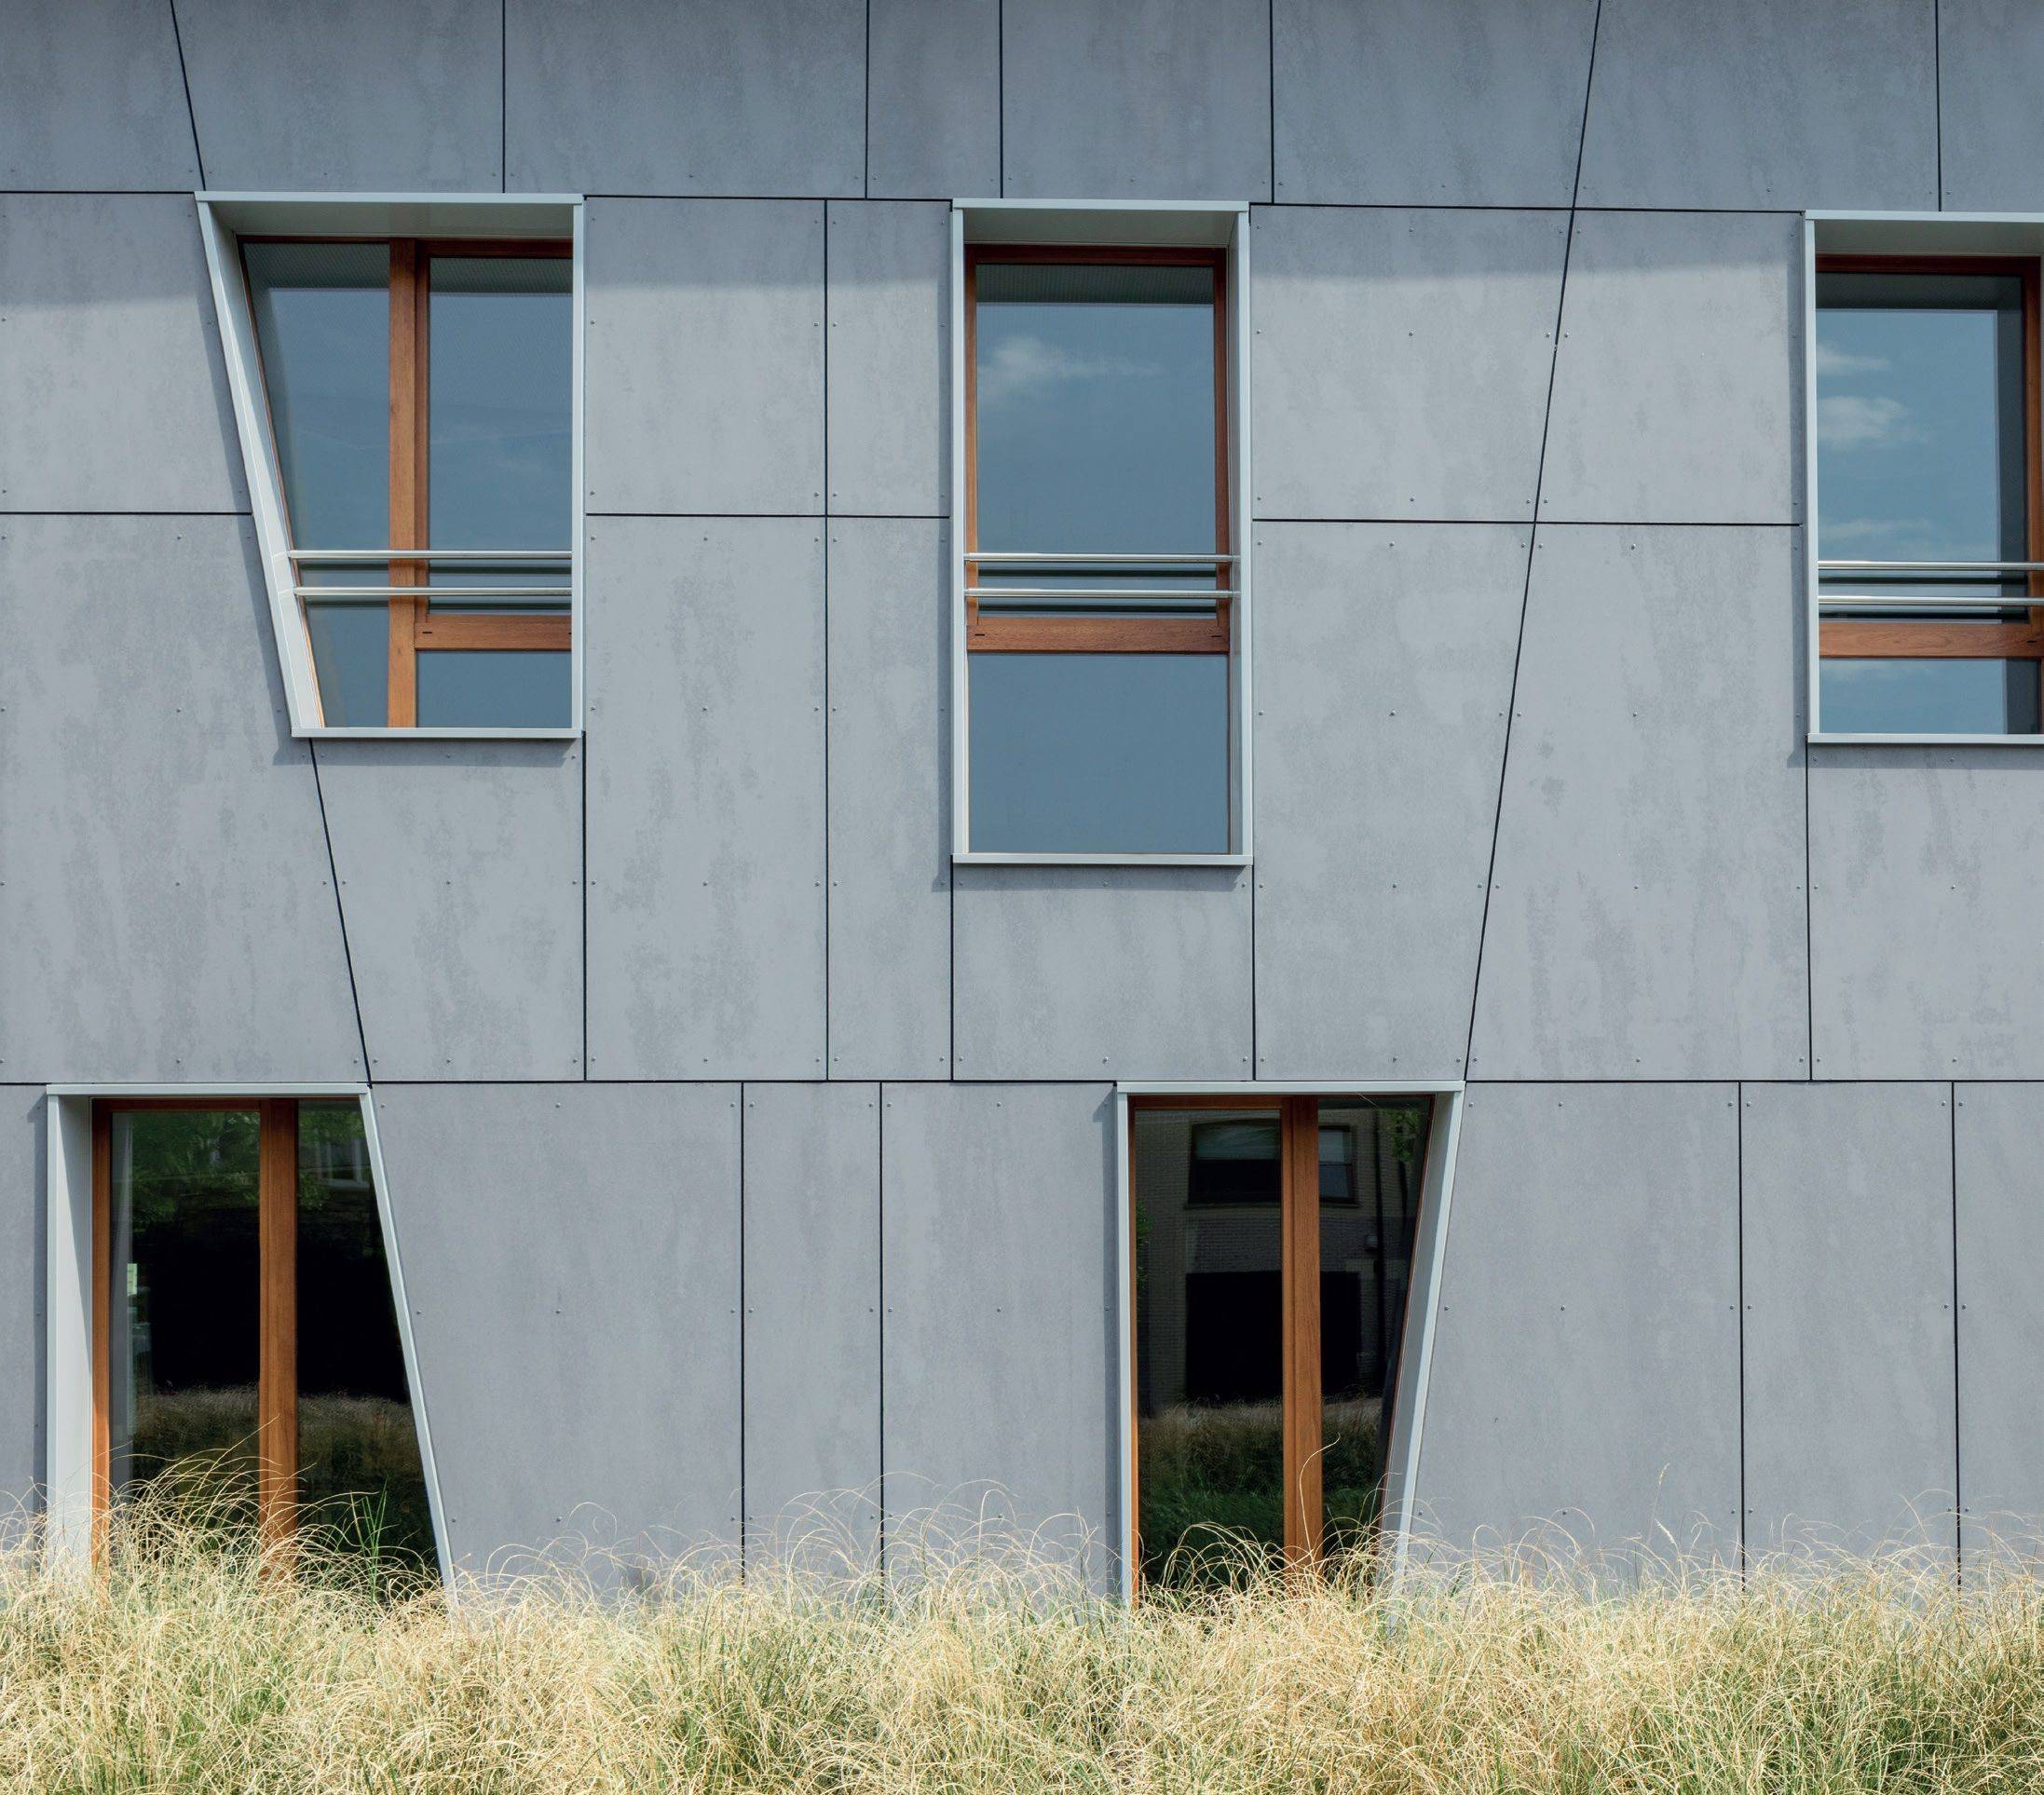 Товарный бетон – преимущества, виды, состав и использование